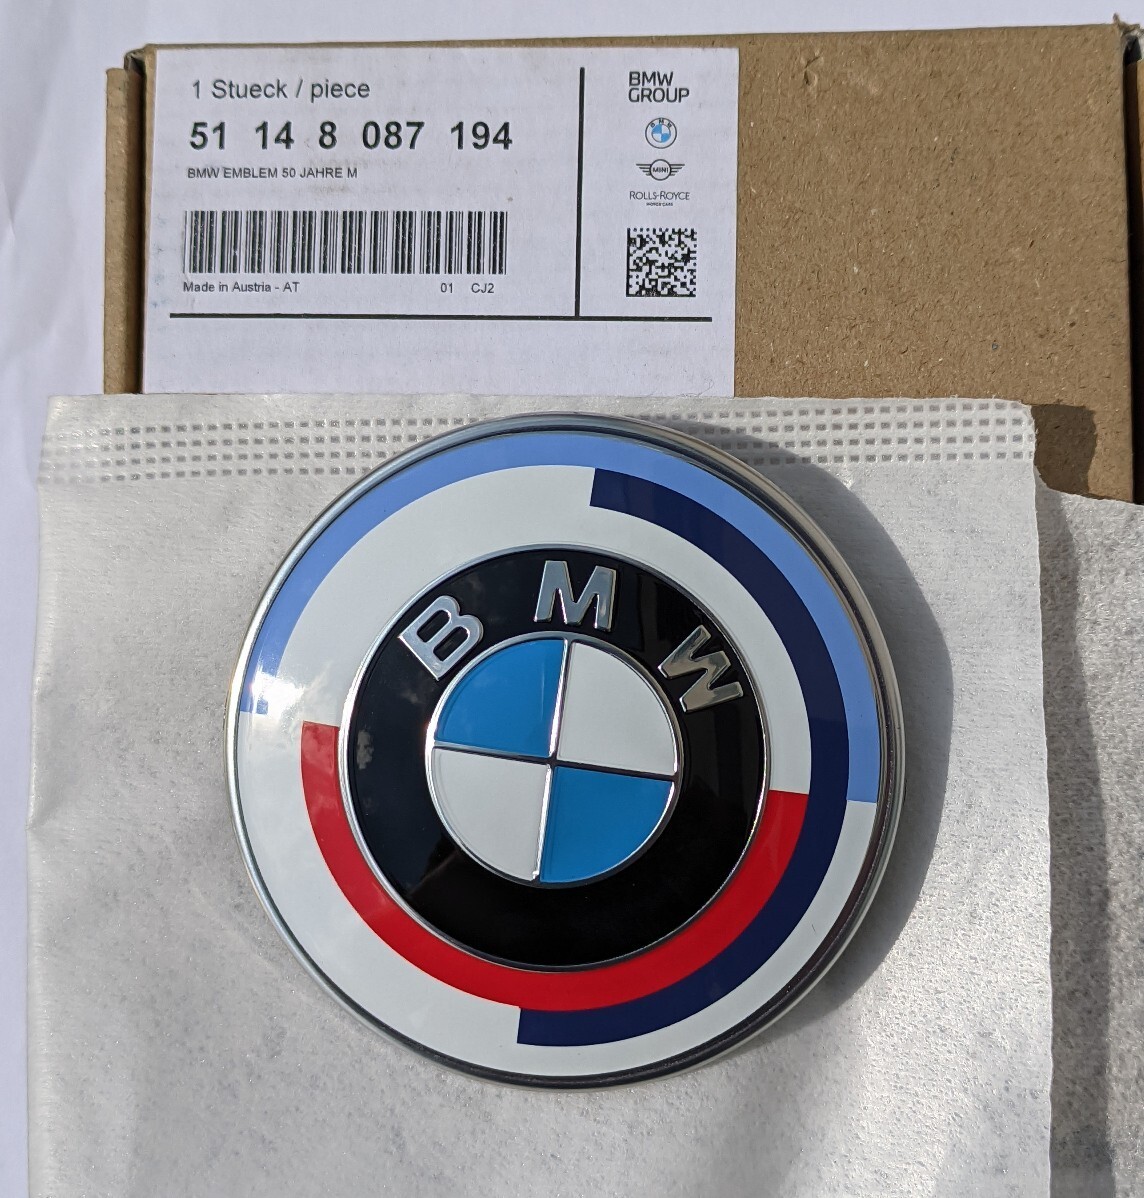 Original BMW 50 Jahre M Emblem - 51148087194